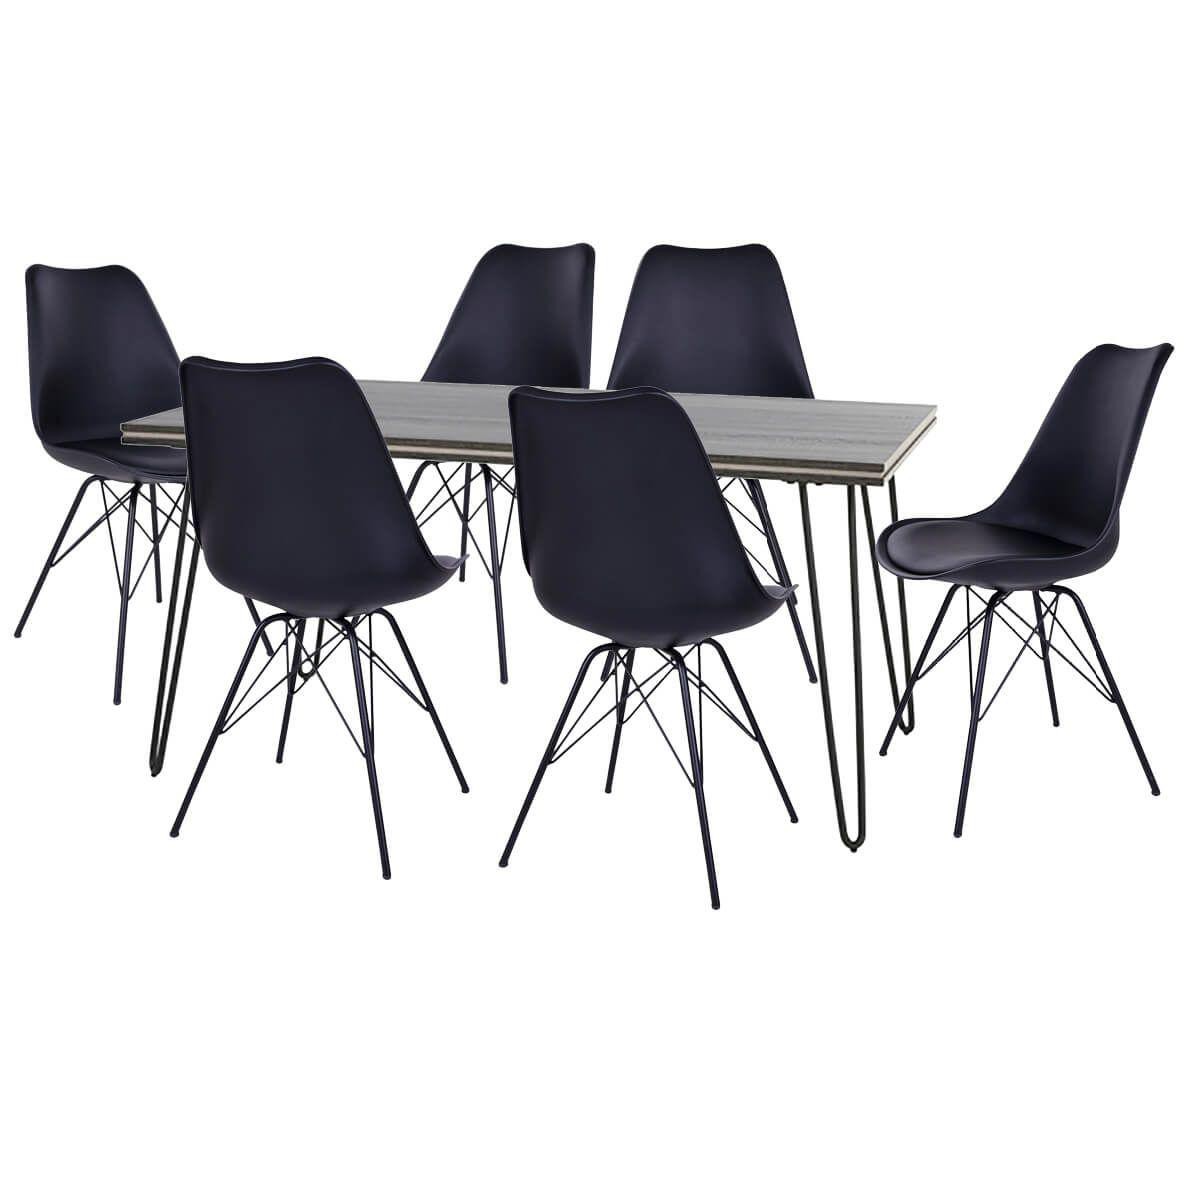 Altobuy - ASCA - Ensemble Table 180cm + 6 Chaises Haga Noires - Tables à manger